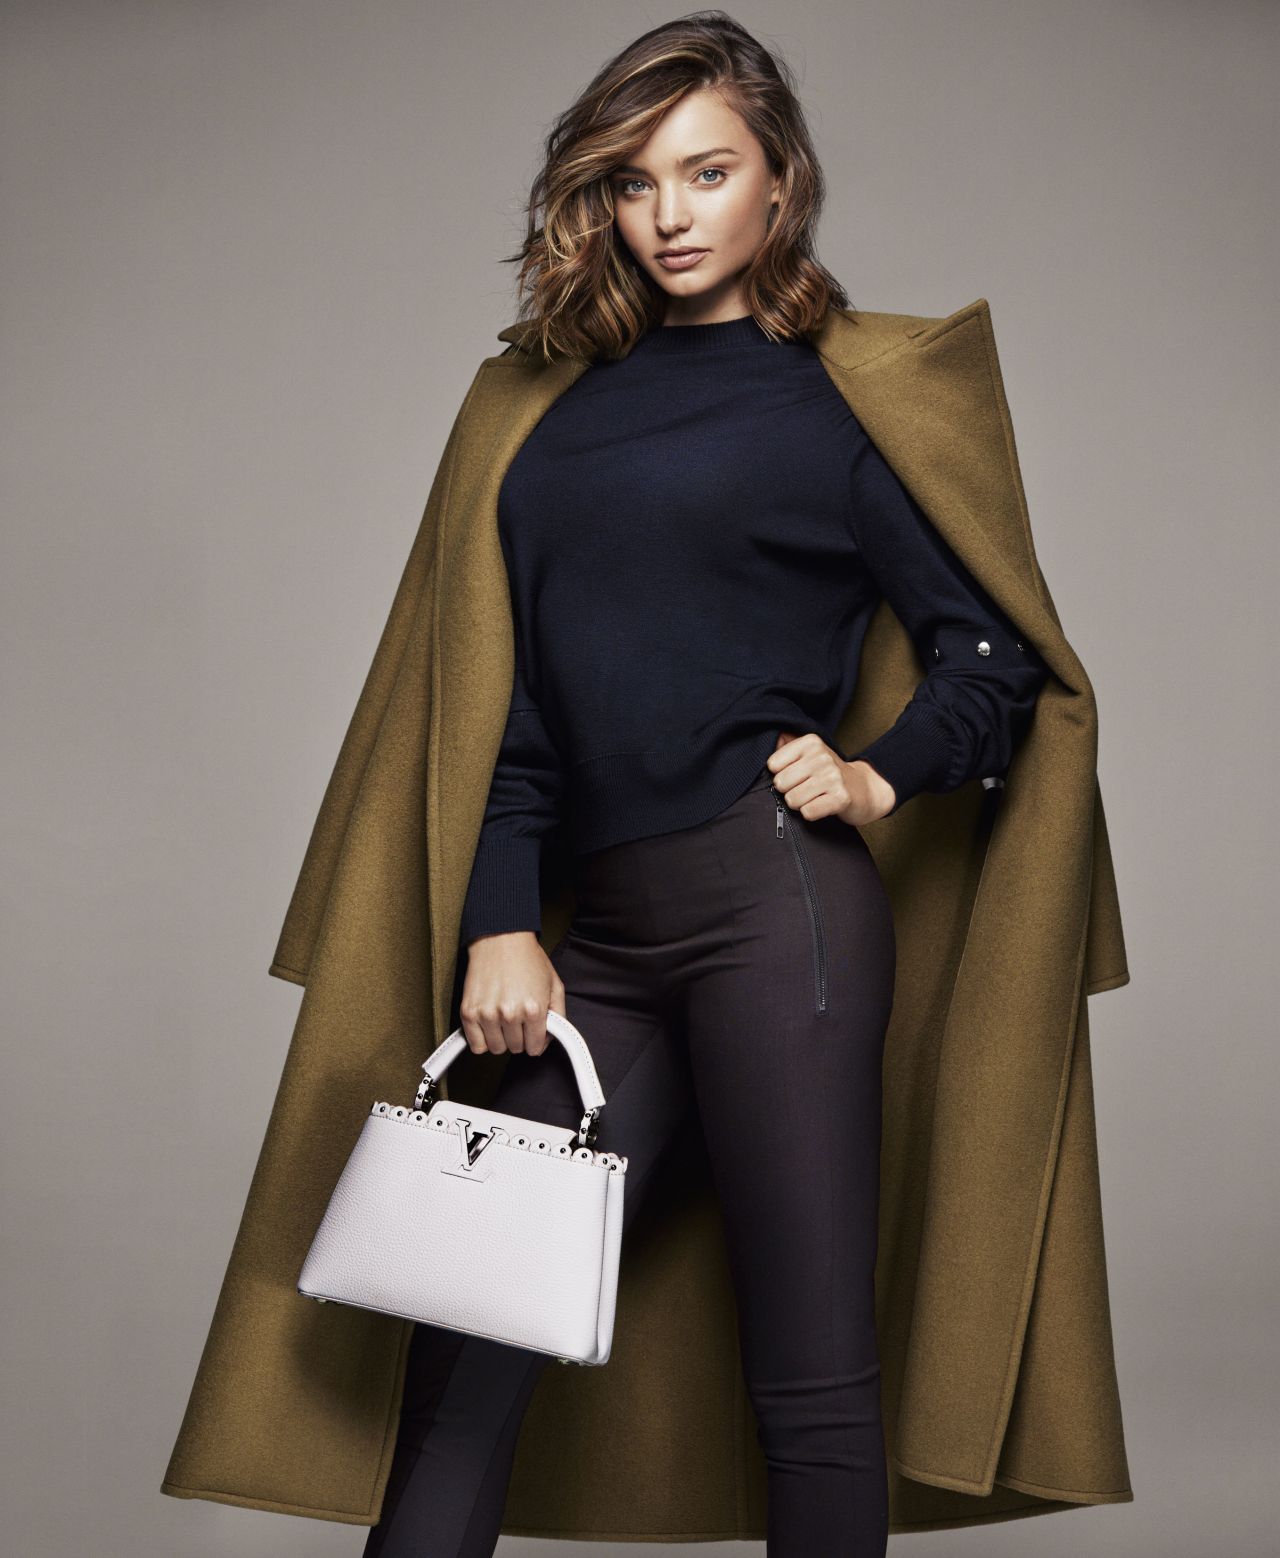 Miranda Kerr - Photoshoot for Louis Vuitton 2017 • CelebMafia